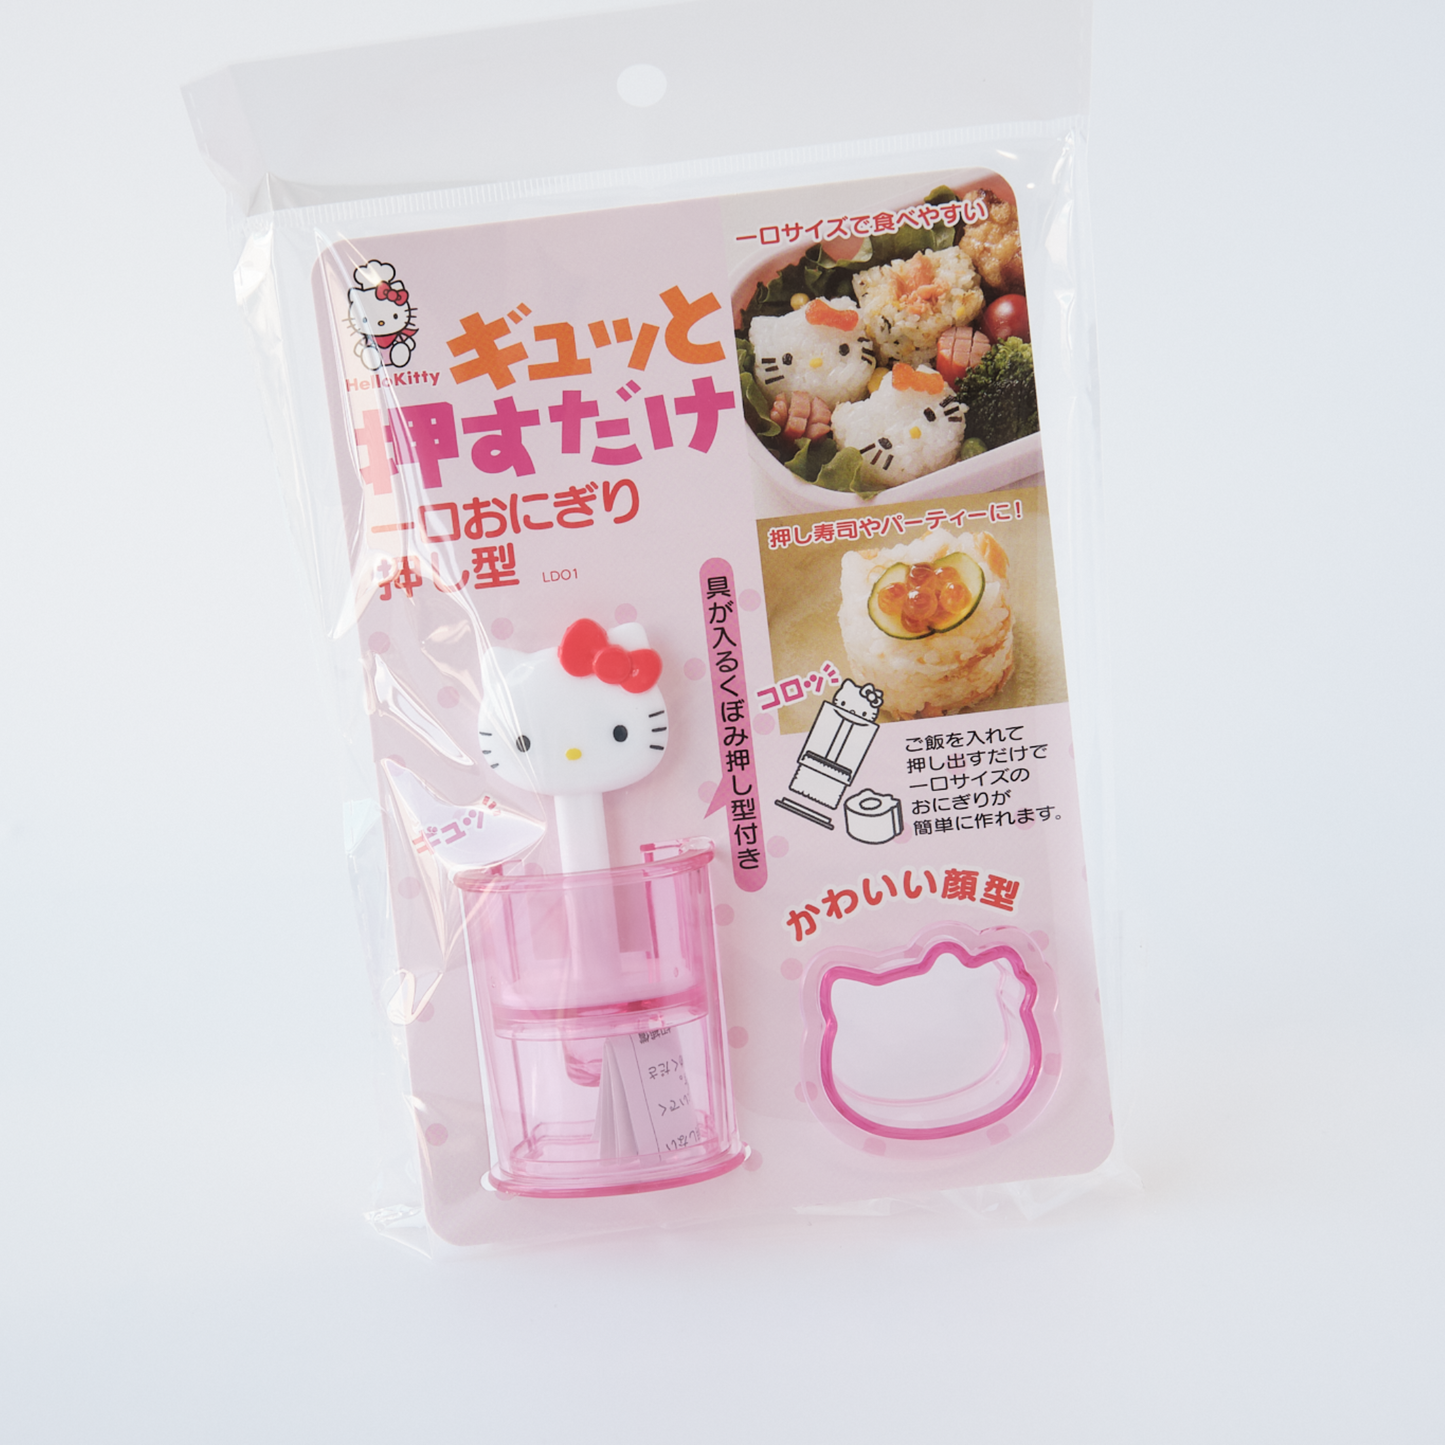 Hello Kitty Onigiri Mold Set